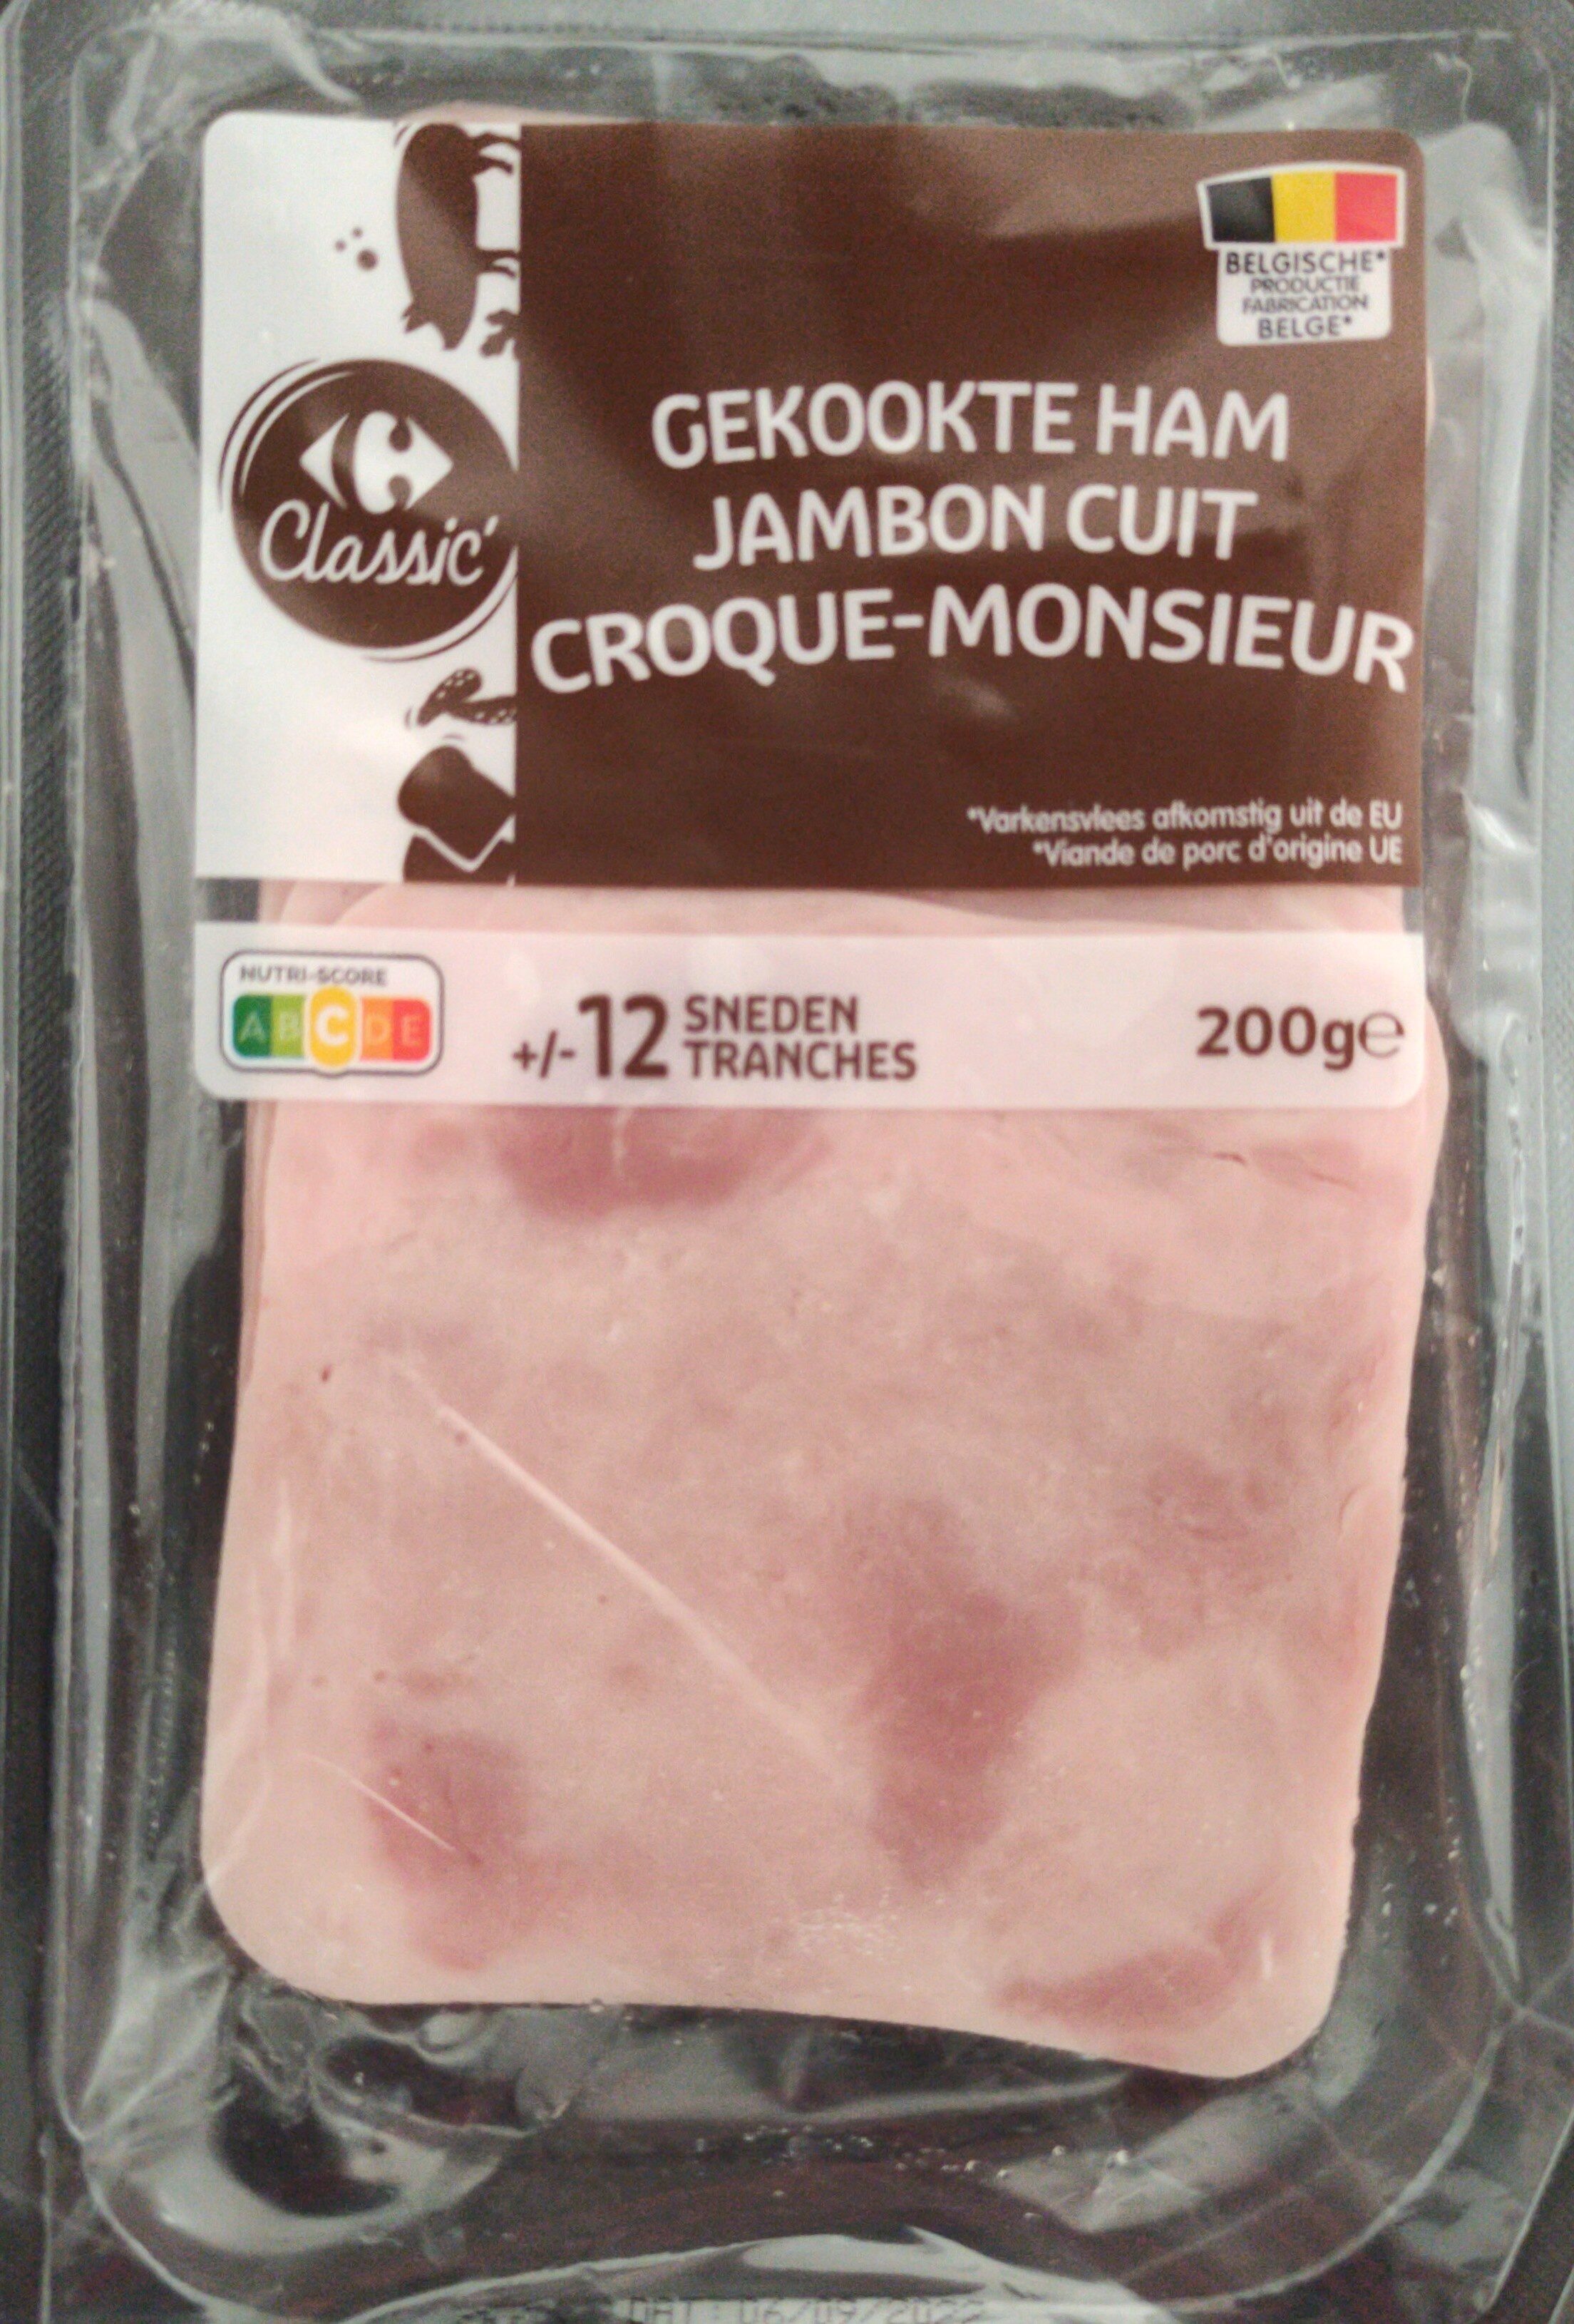 Jambon cuit Croque-Monsieur - Product - fr